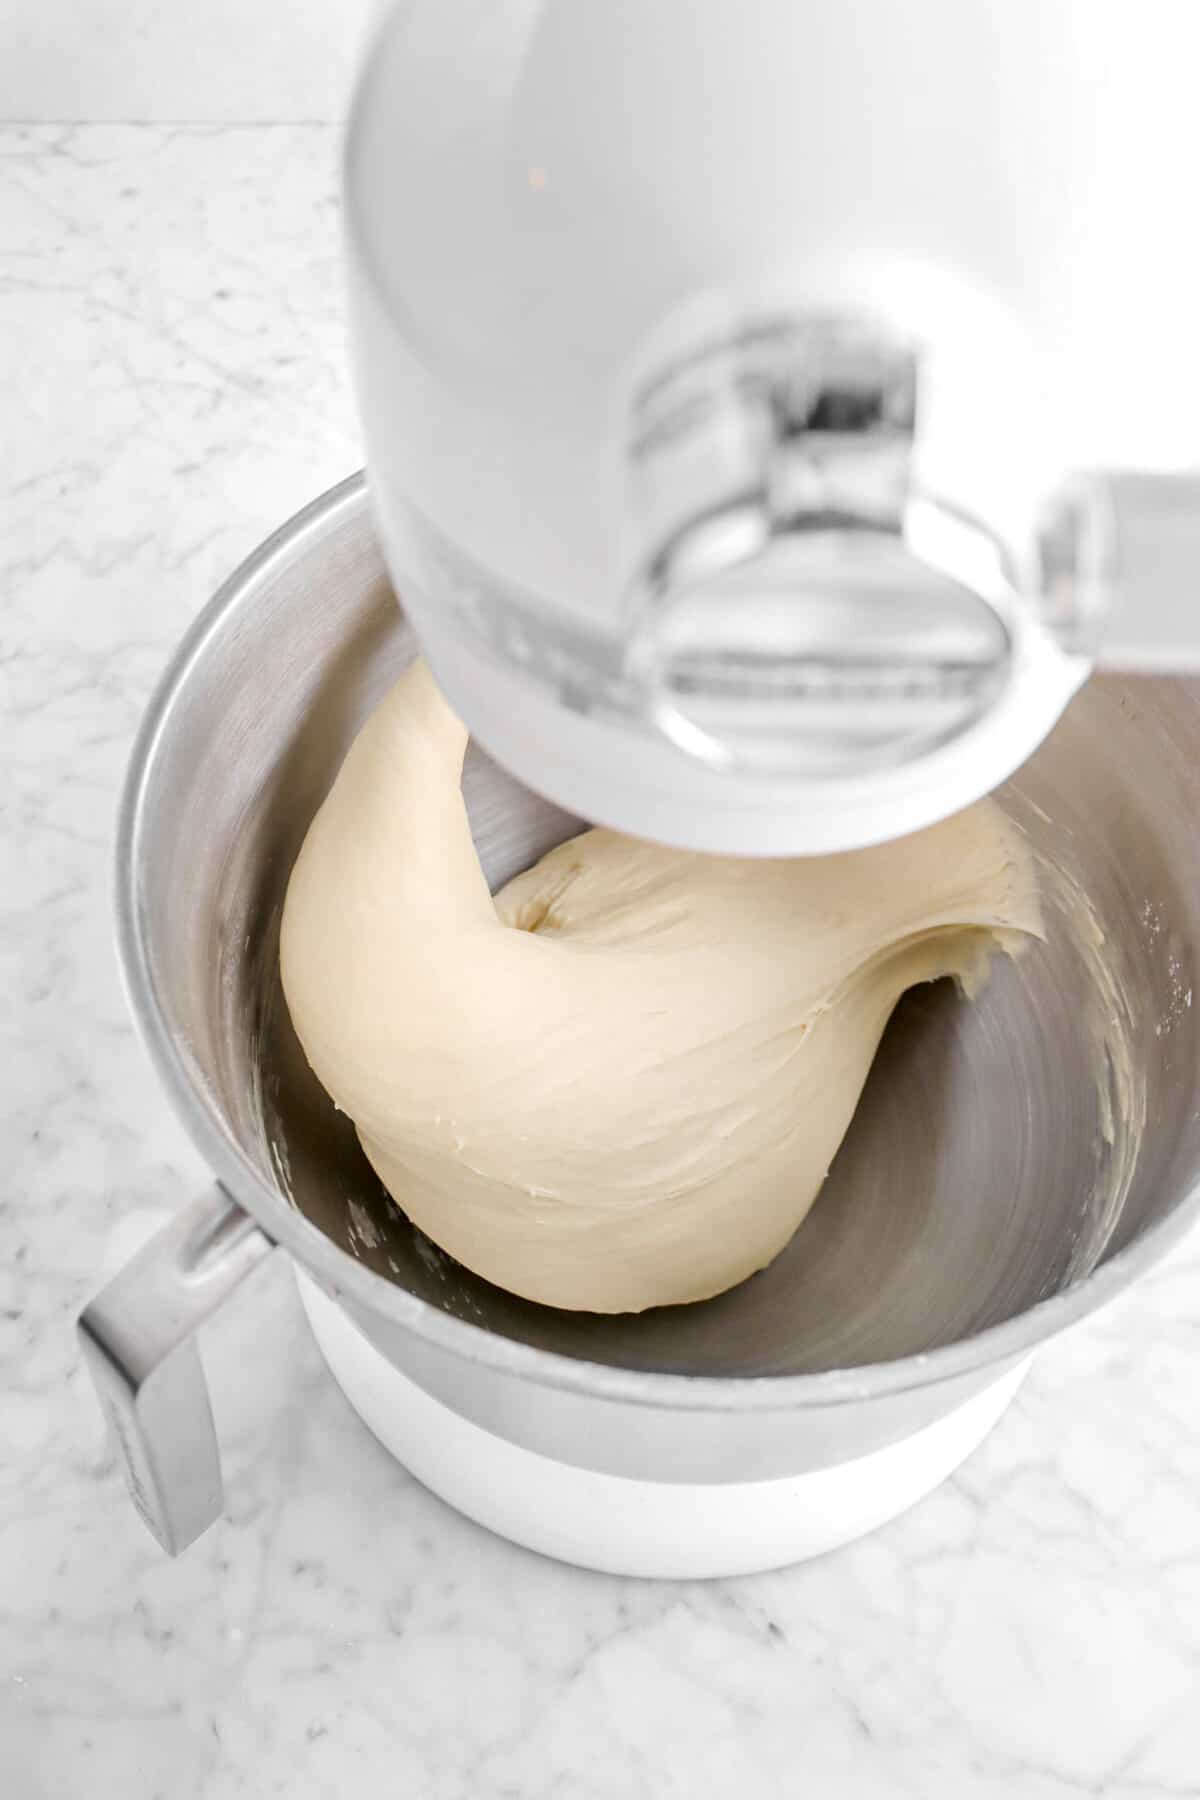 smooth dough in mixer bowl